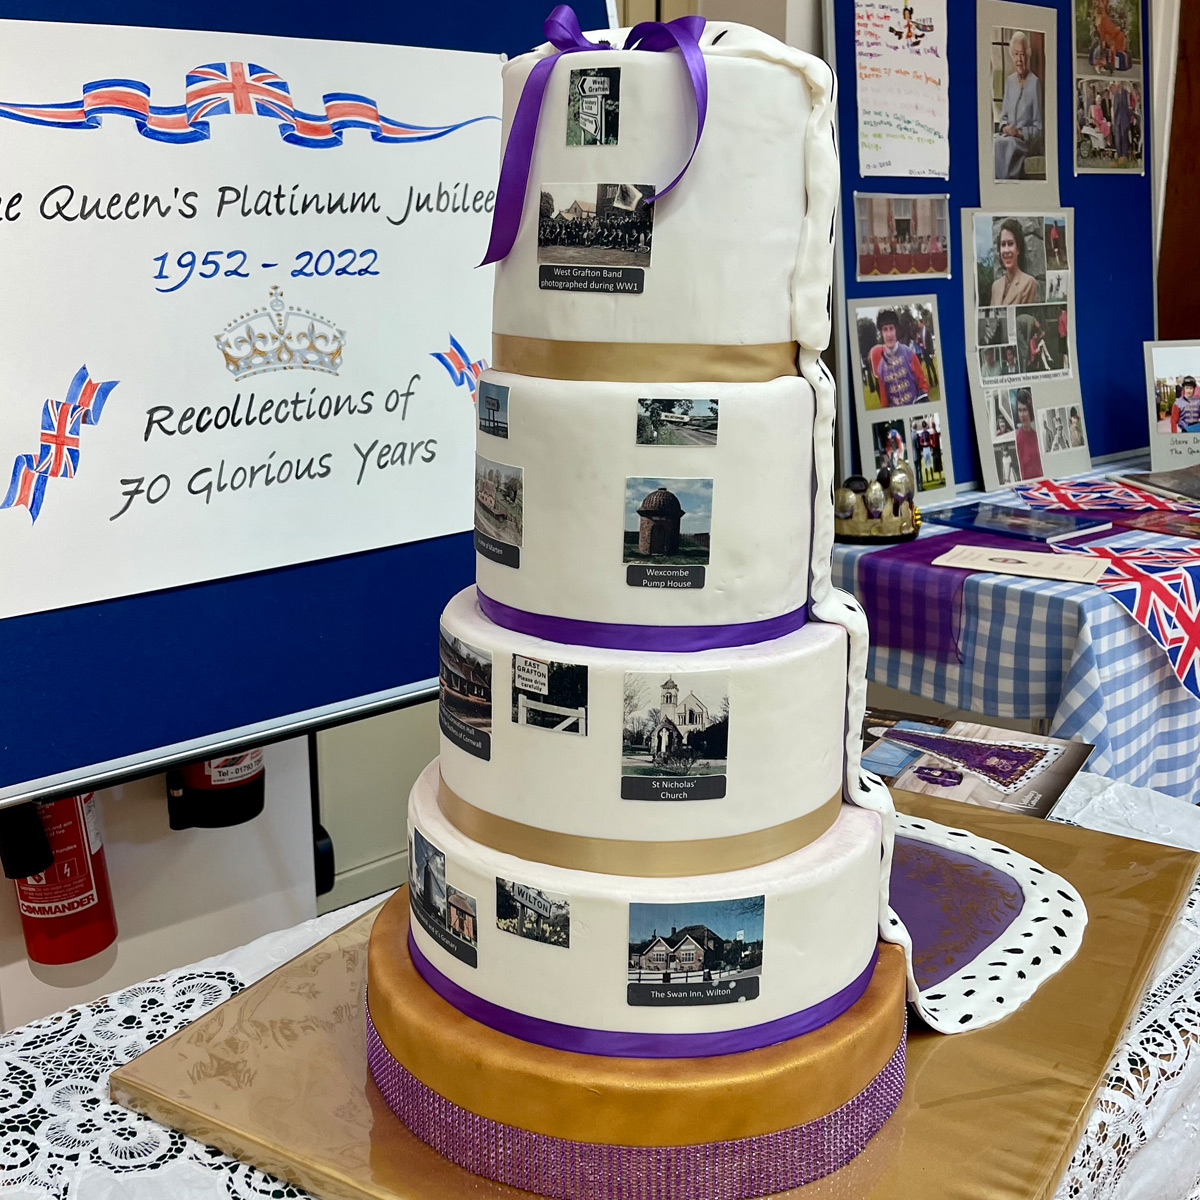 Queen's jubilee cake